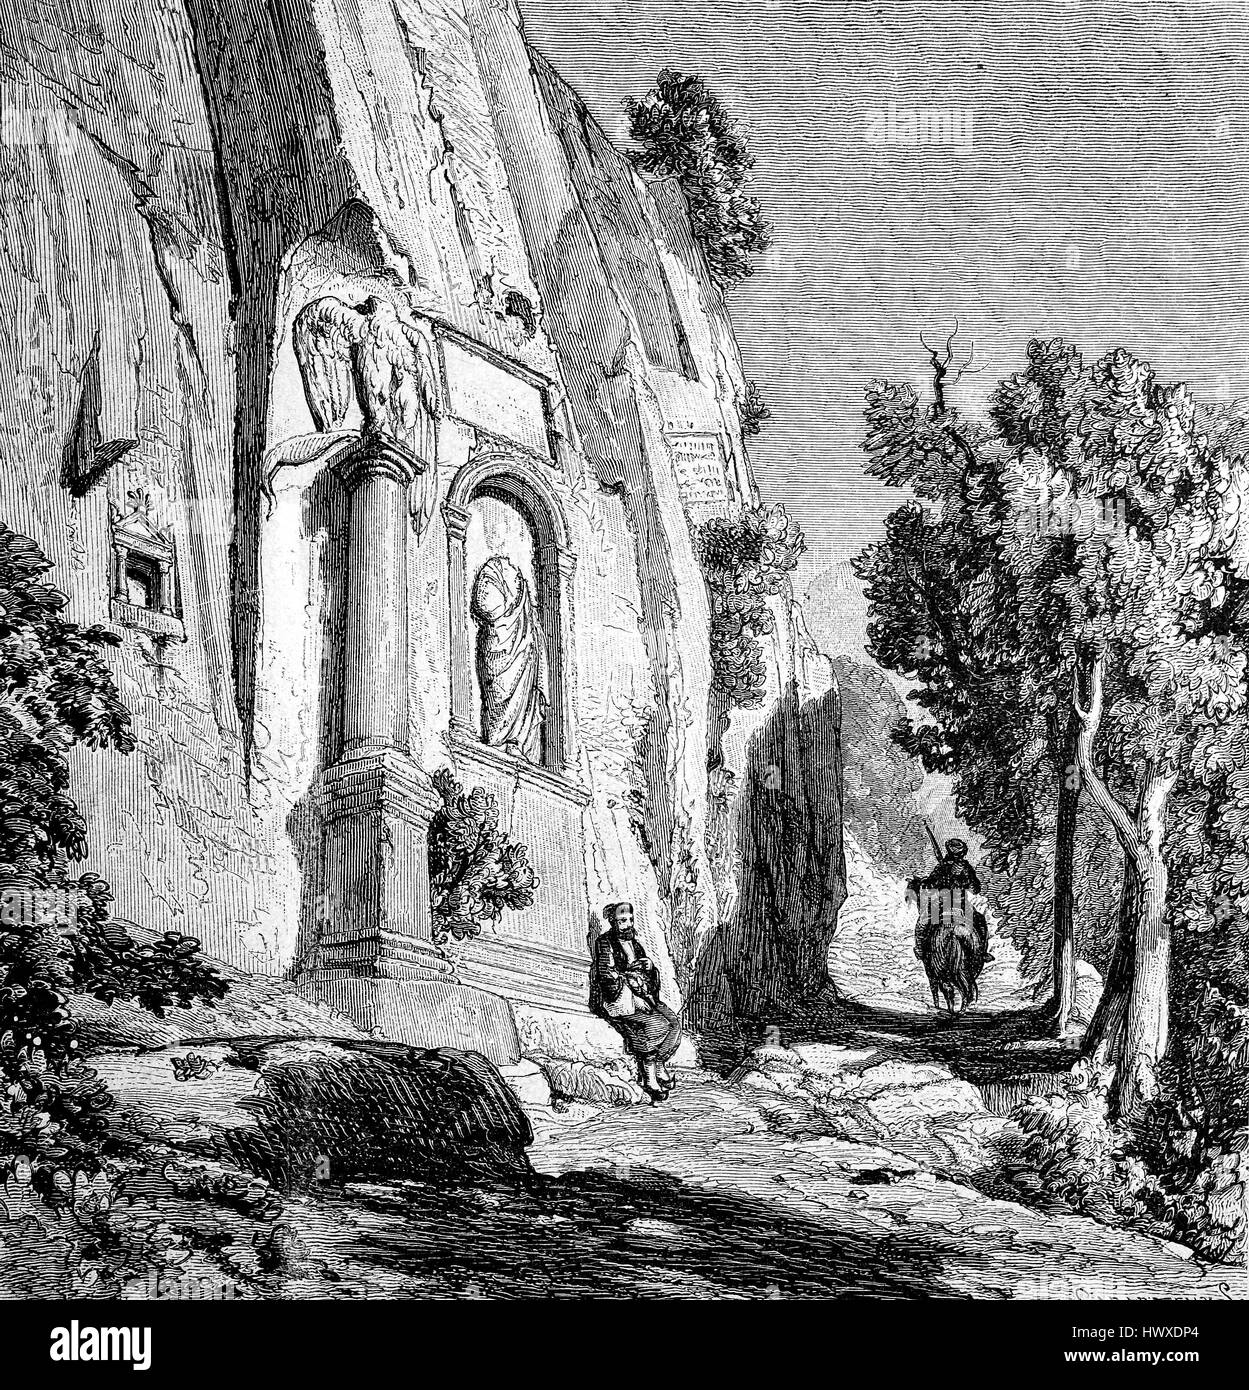 Ein Monument in Rock bei Amasserah, östlich von Römerstraße in Bithynien, Amasserah, Türkei Asien geschnitzt, Reproduktion eines Bildes, Holzschnitt aus dem Jahr 1881, digital verbessert Stockfoto